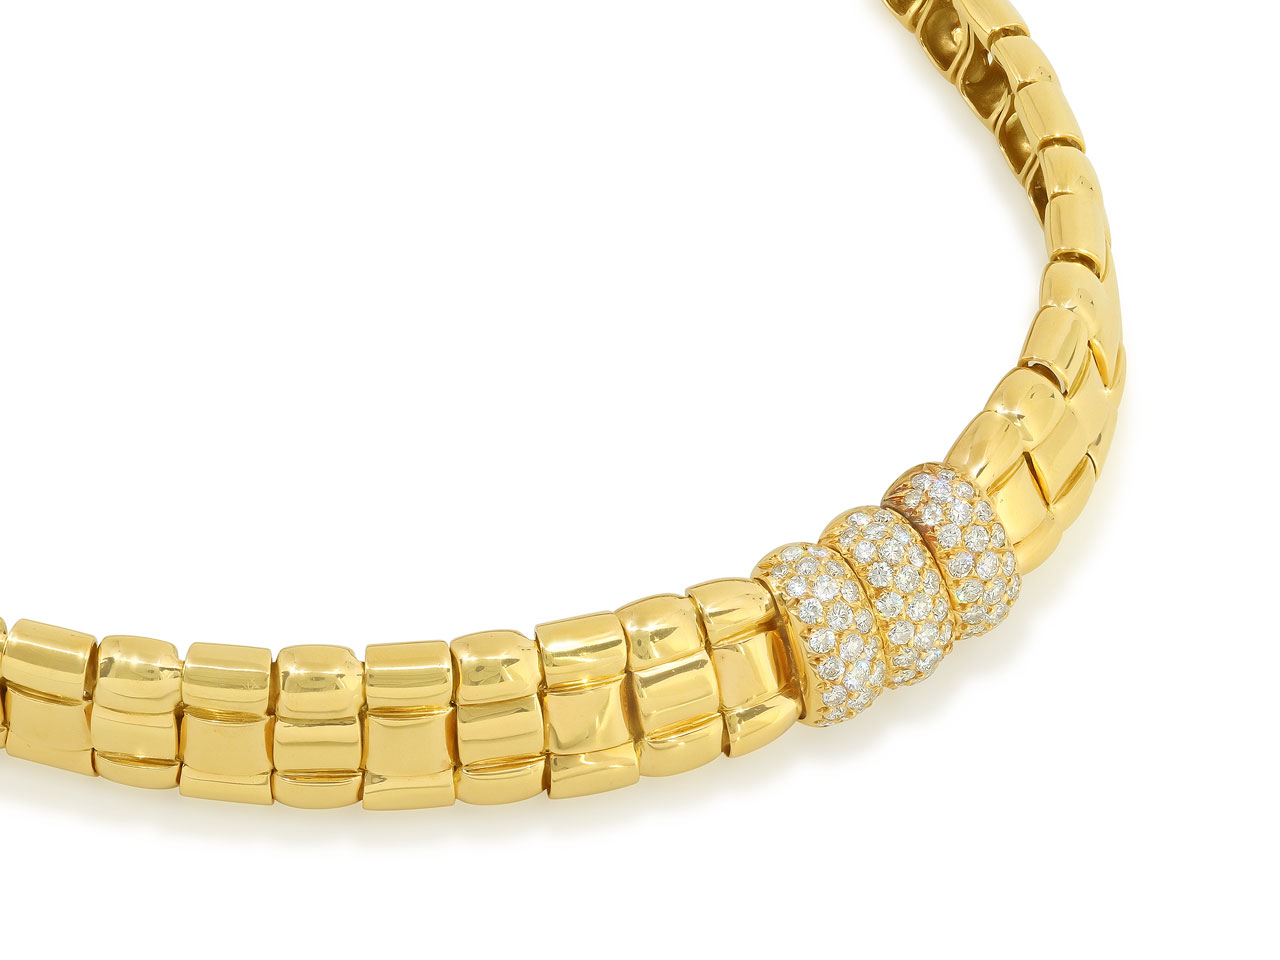 Van Cleef & Arpels Diamond Necklace in 18K Gold